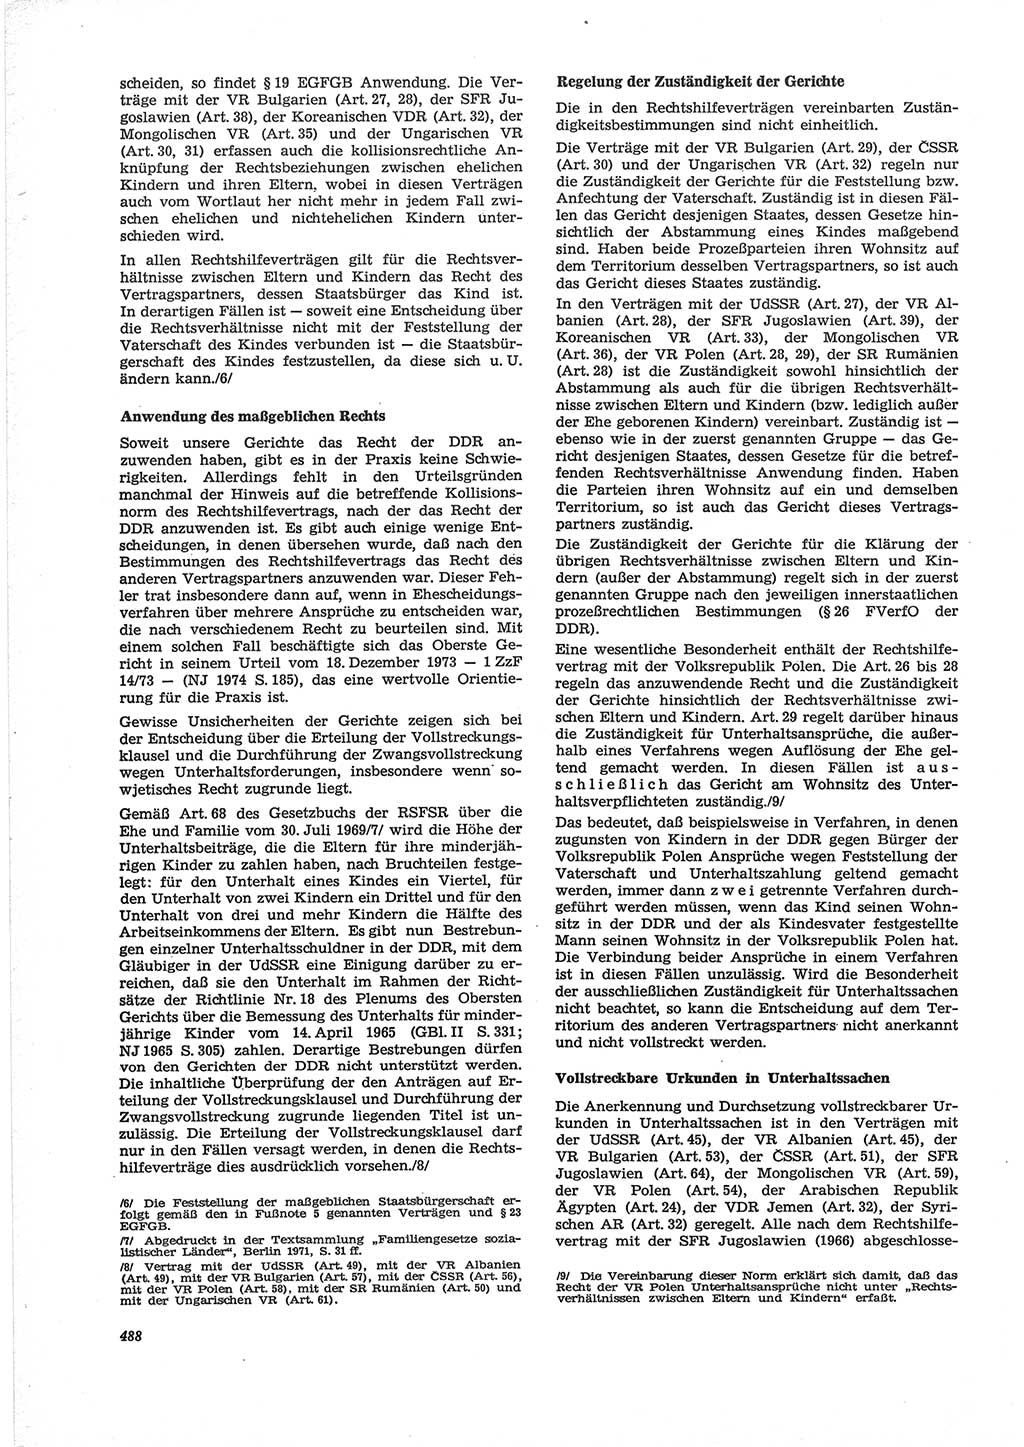 Neue Justiz (NJ), Zeitschrift für Recht und Rechtswissenschaft [Deutsche Demokratische Republik (DDR)], 28. Jahrgang 1974, Seite 488 (NJ DDR 1974, S. 488)